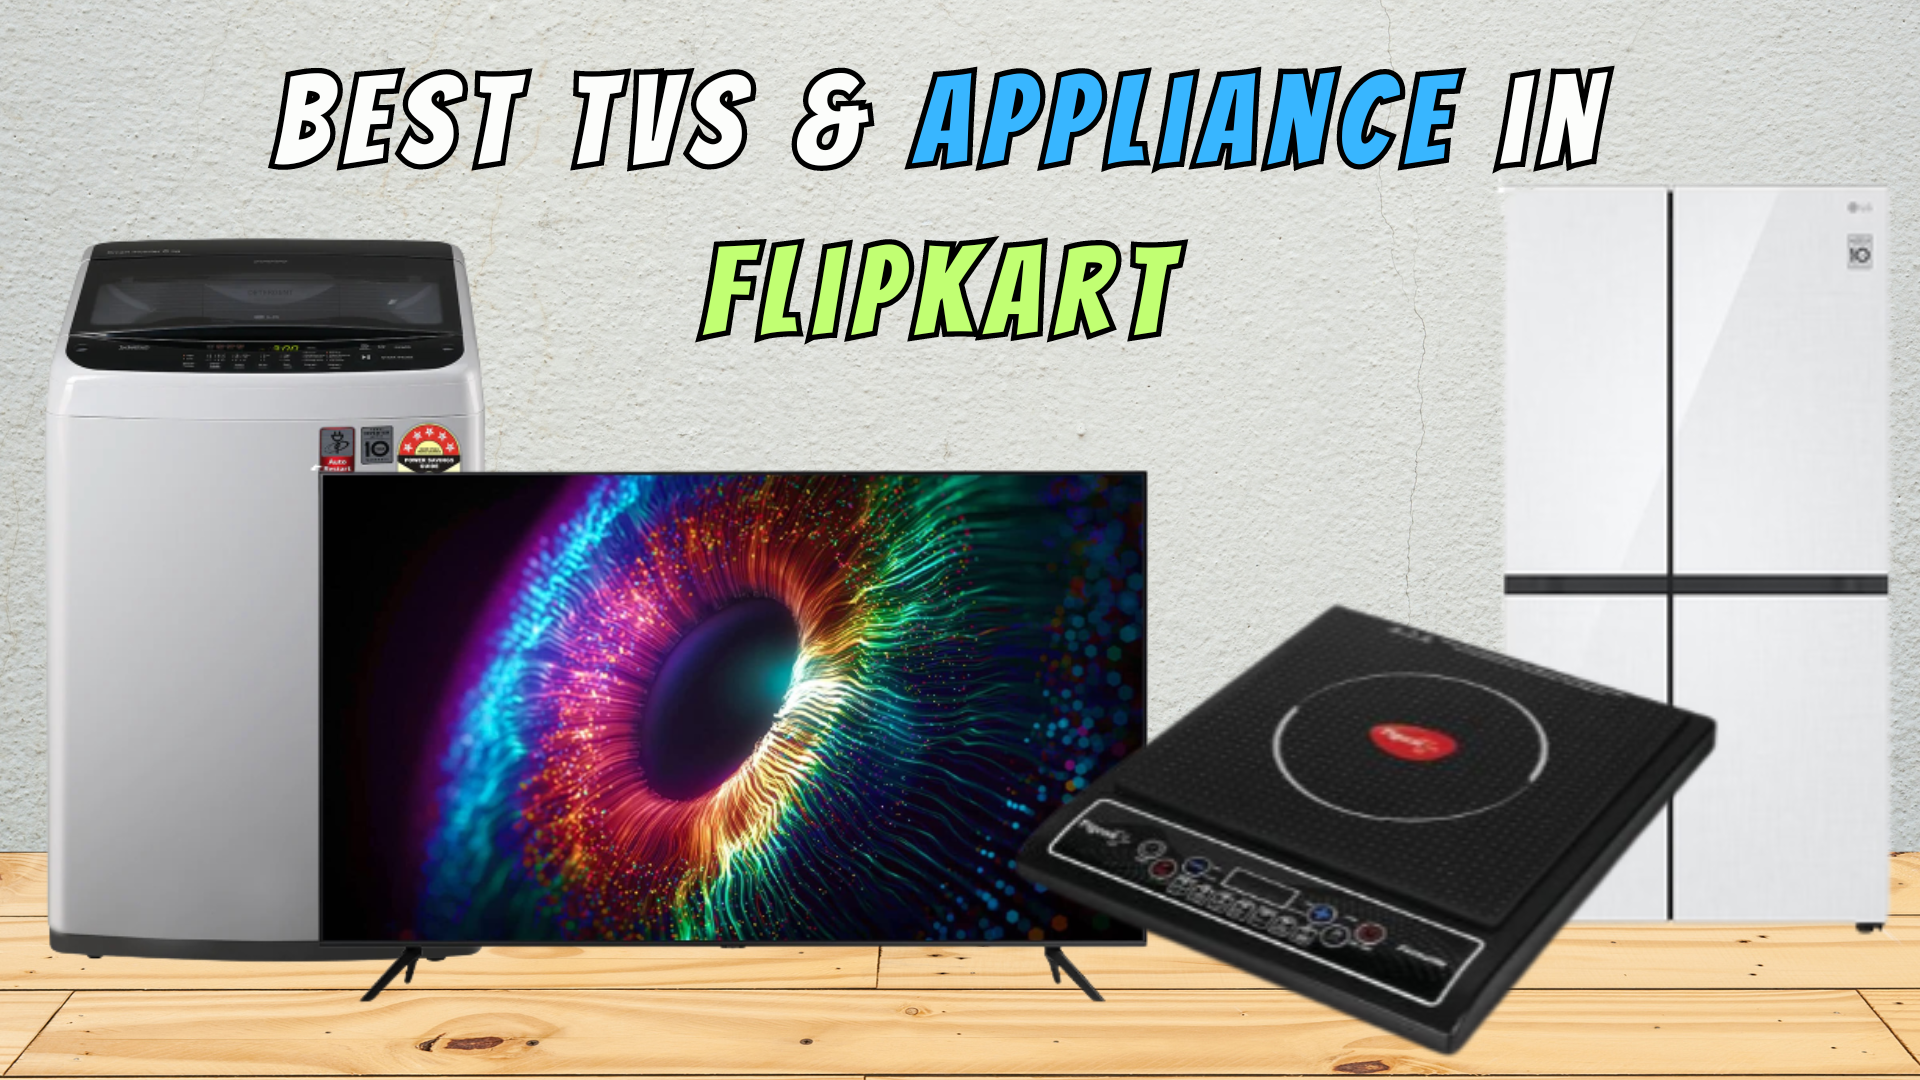 Best TVs & Appliance in Flipkart